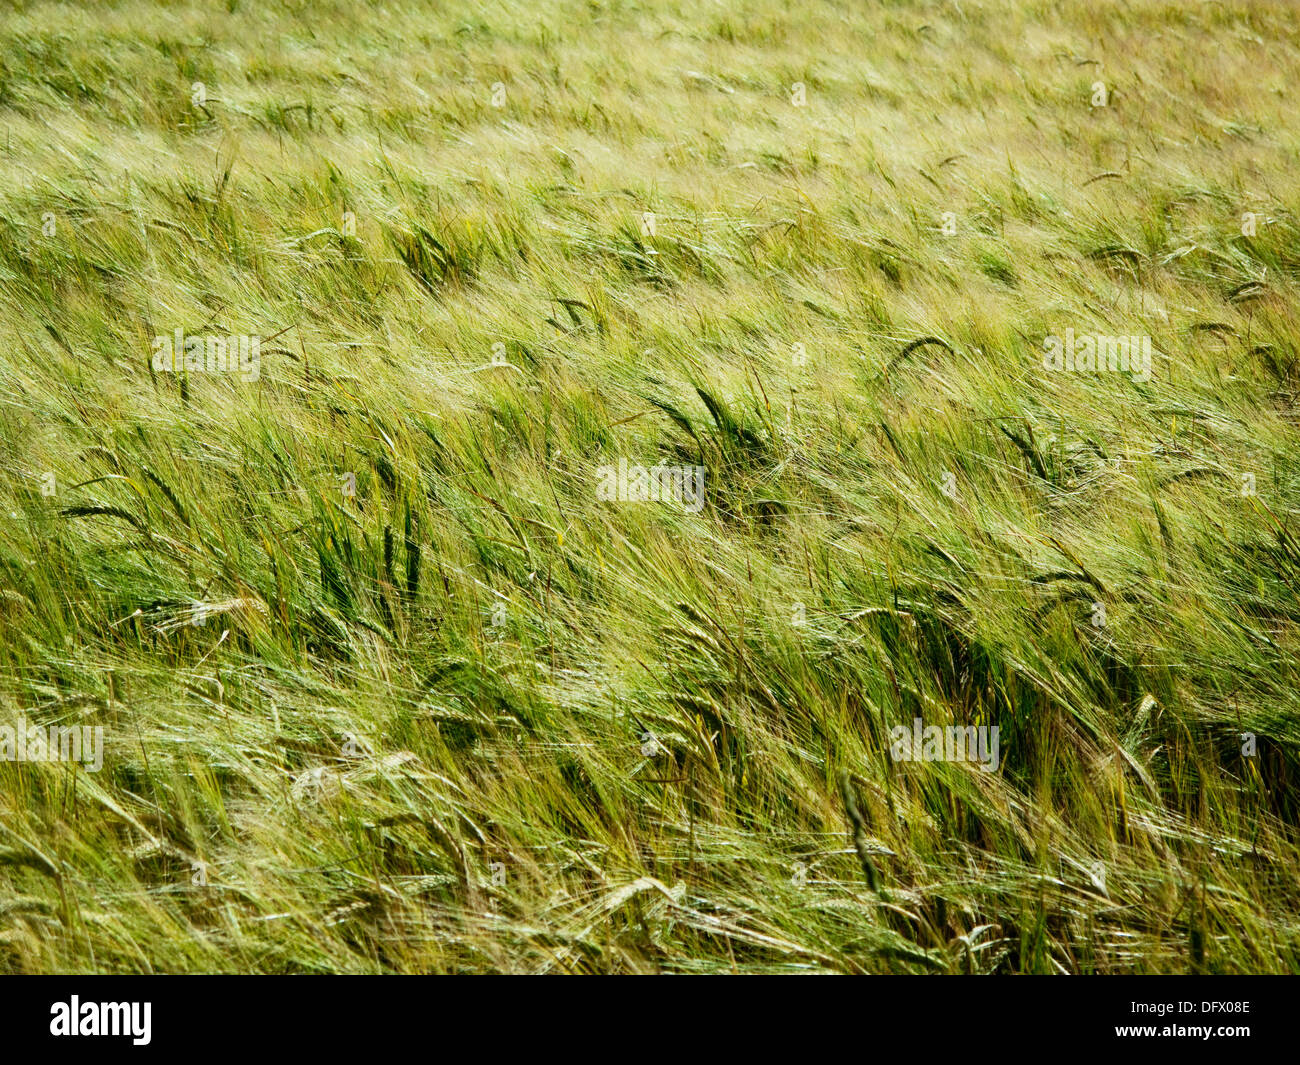 Green Wheat Field Blowing in Wind Stock Photo